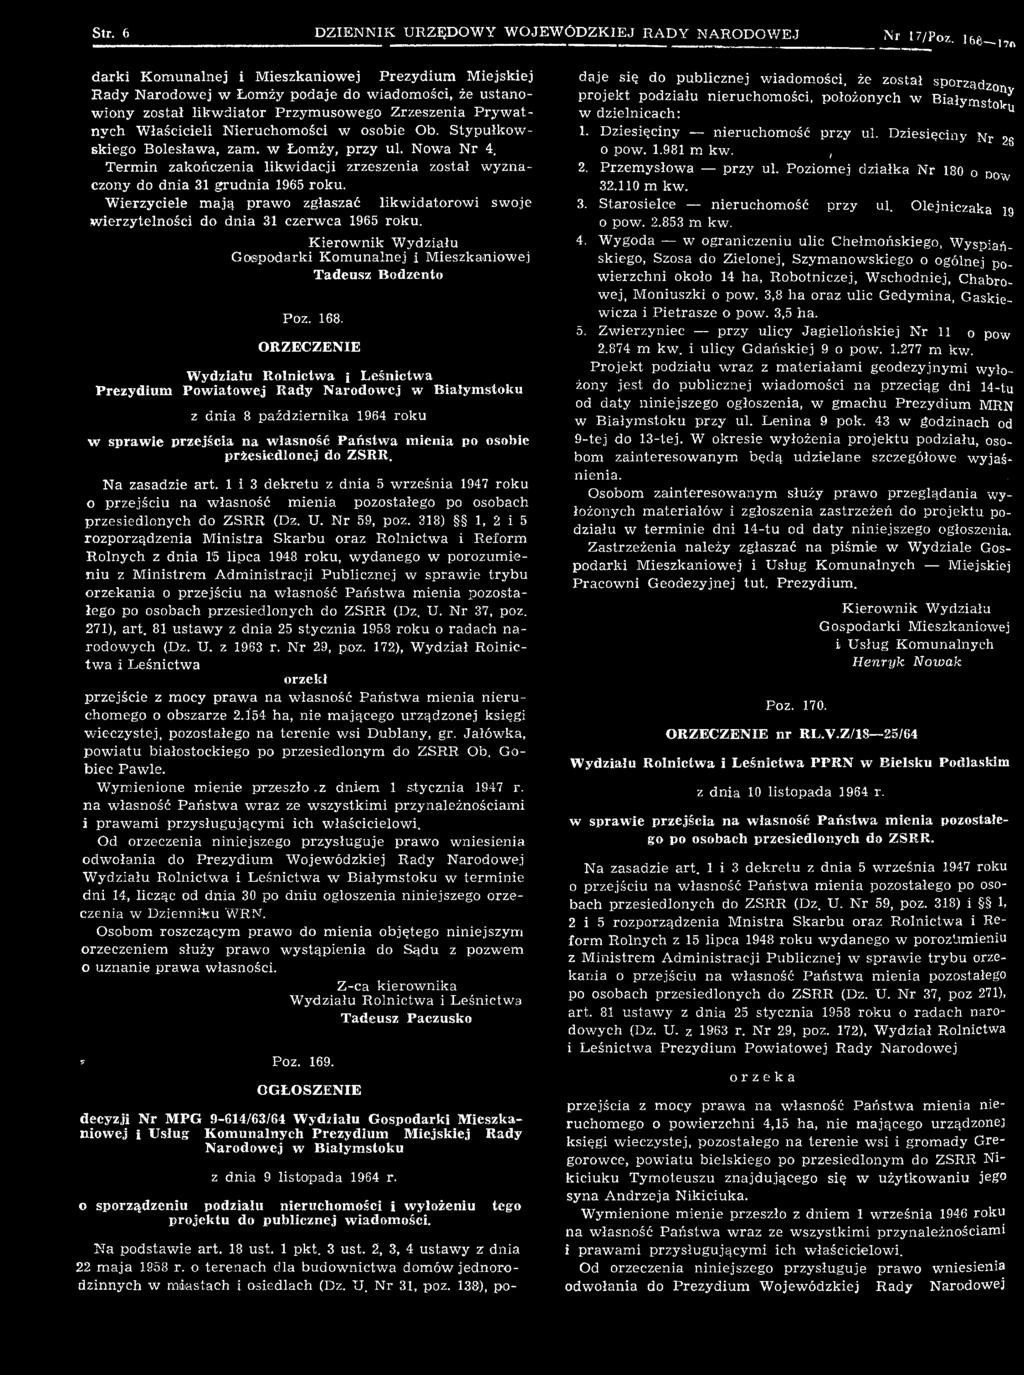 ORZECZENIE Wydziału Rolnictwa i Leśnictwa Prezydium Powiatowej Rady Narodowej w Białymstoku z dnia 8 października 1964 roku w sprawie przejścia na własność Państwa mienia po osobie przesiedlonej do